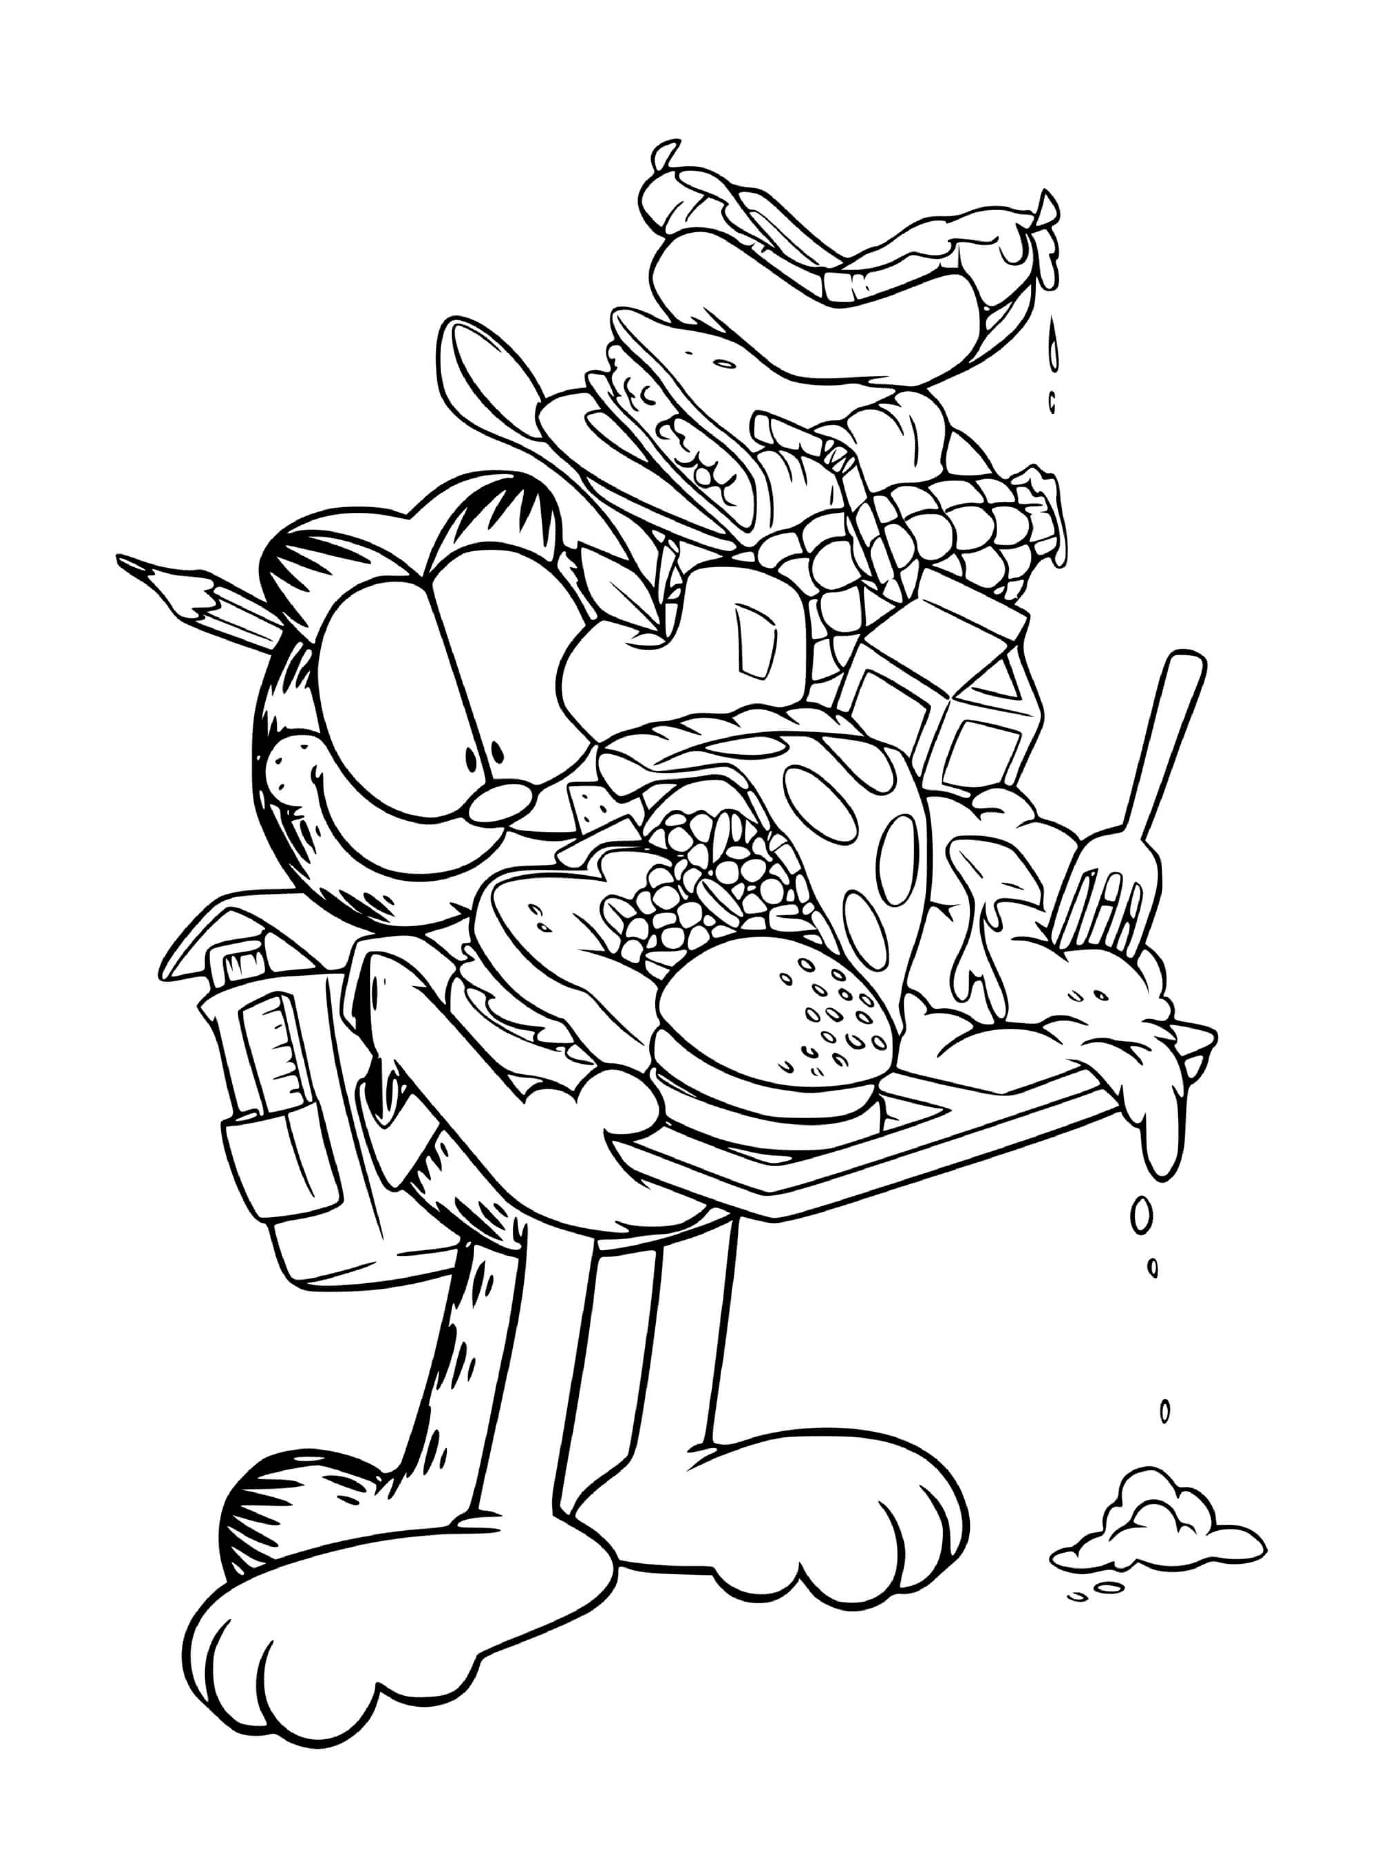  Garfield sai da cafeteria com uma bandeja 